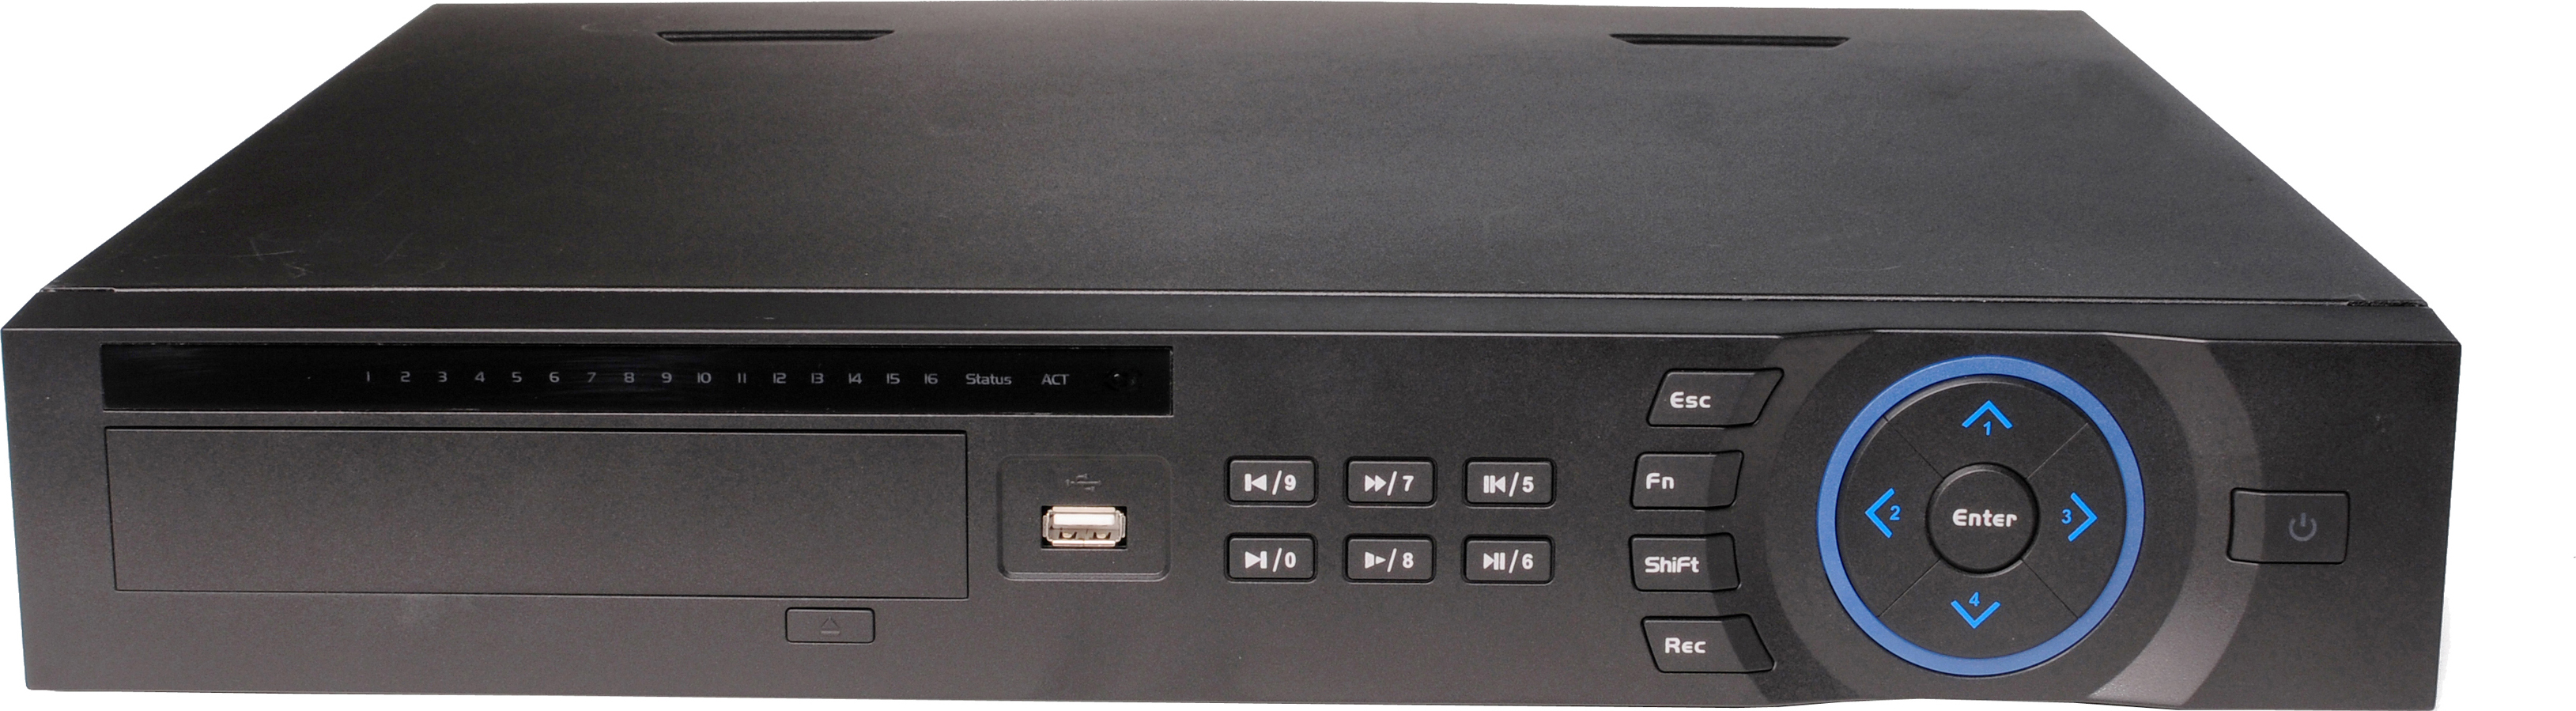 Dahua DVR-04HDL